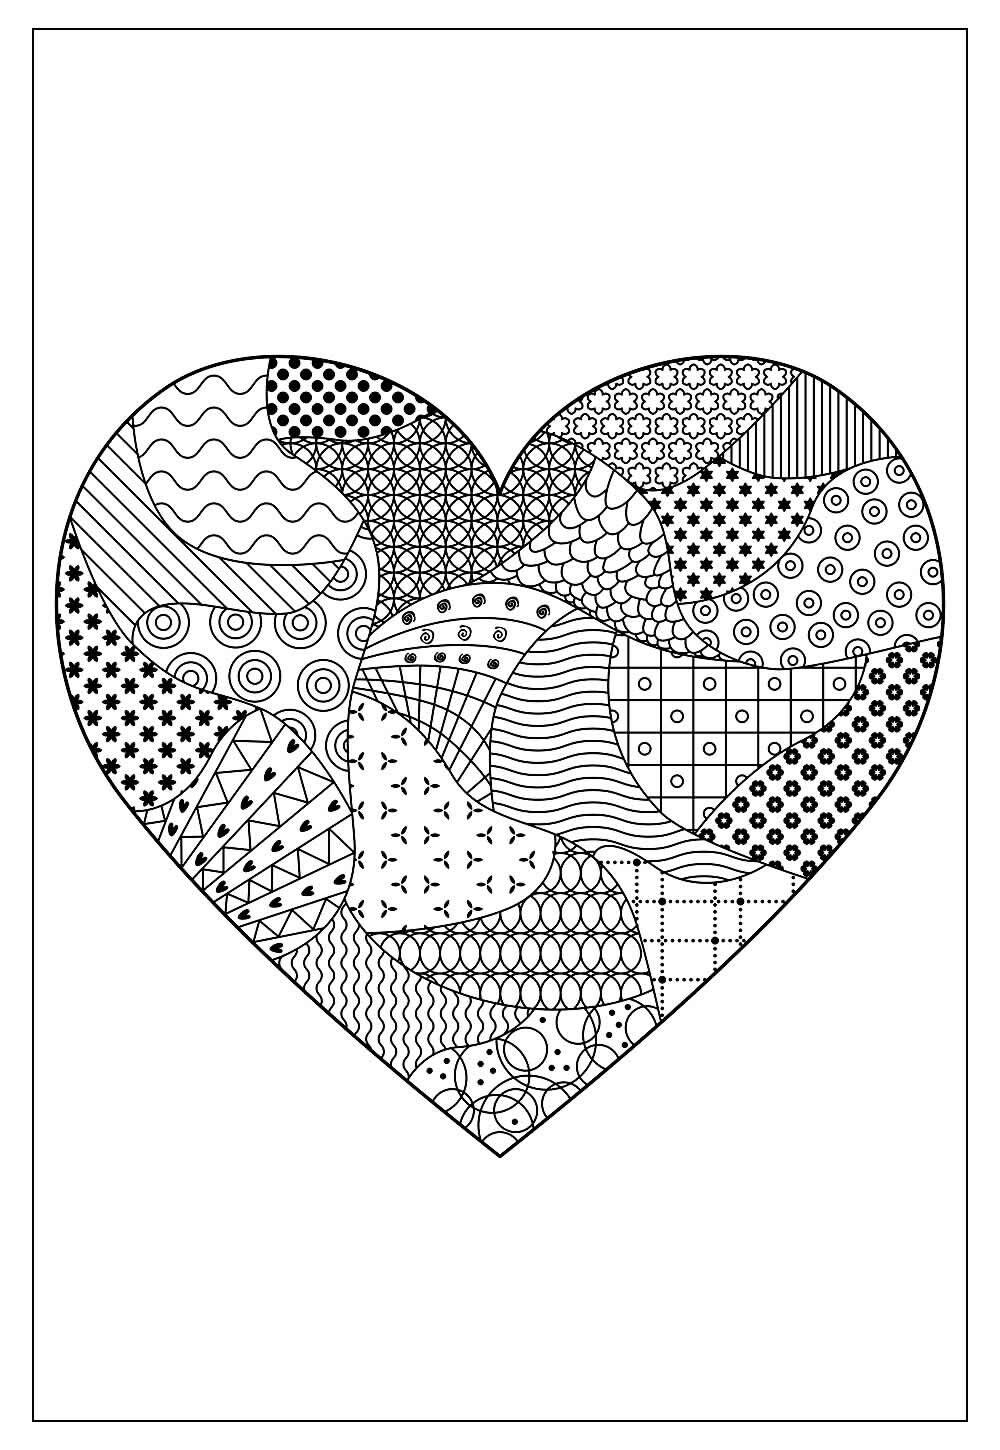 Desenhos para Adultos de Coração para Colorir - Imprimir A4